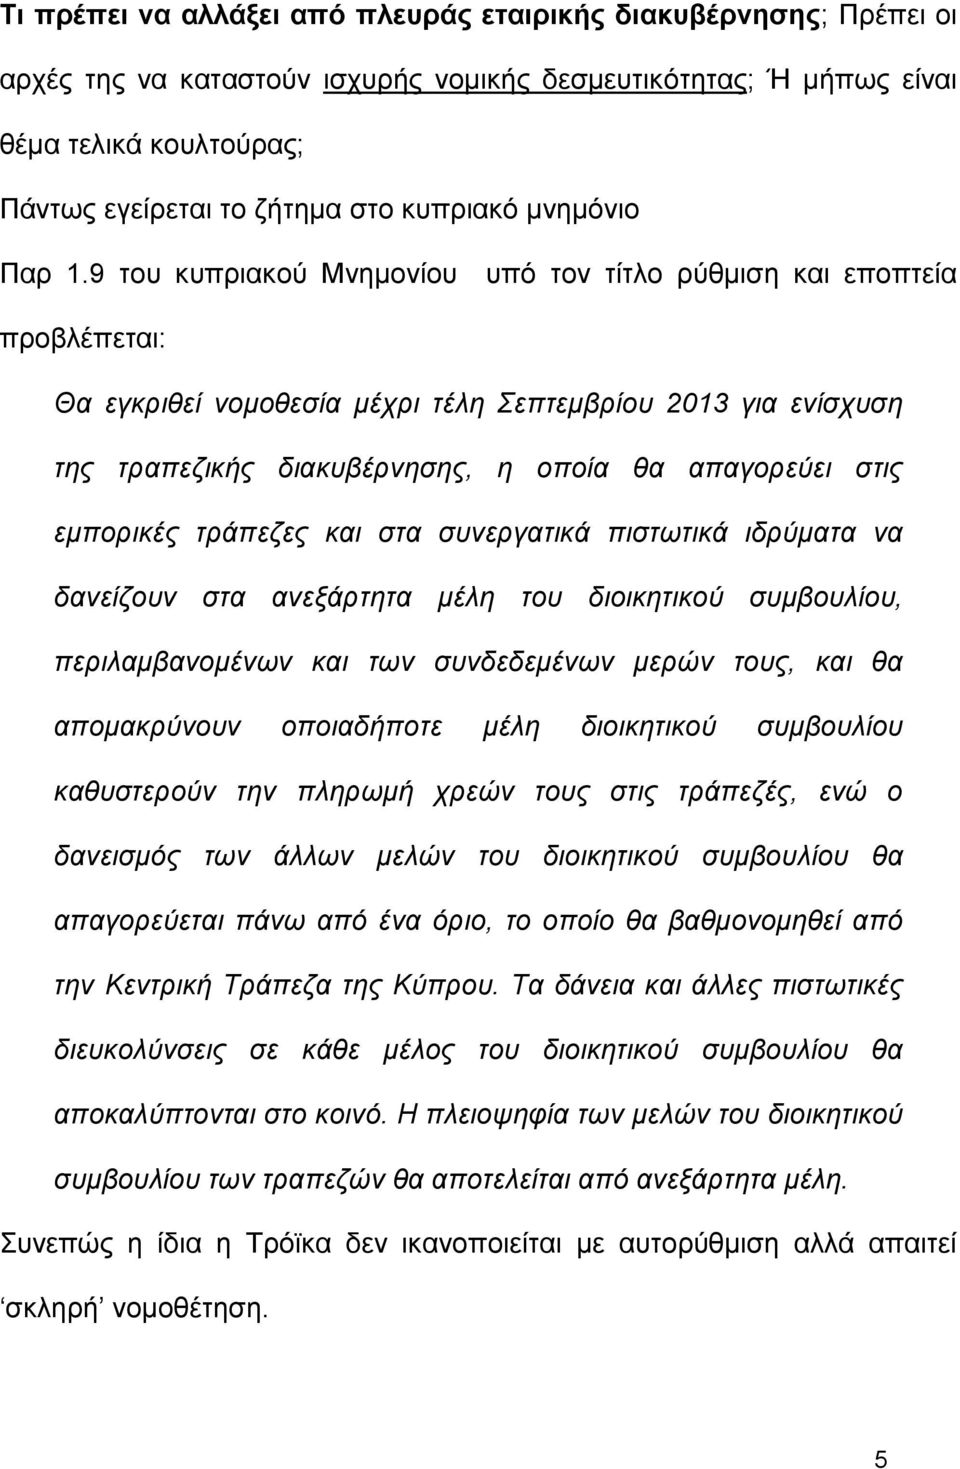 9 του κυπριακού Μνημονίου υπό τον τίτλο ρύθμιση και εποπτεία προβλέπεται: Θα εγκριθεί νομοθεσία μέχρι τέλη Σεπτεμβρίου 2013 για ενίσχυση της τραπεζικής διακυβέρνησης, η οποία θα απαγορεύει στις